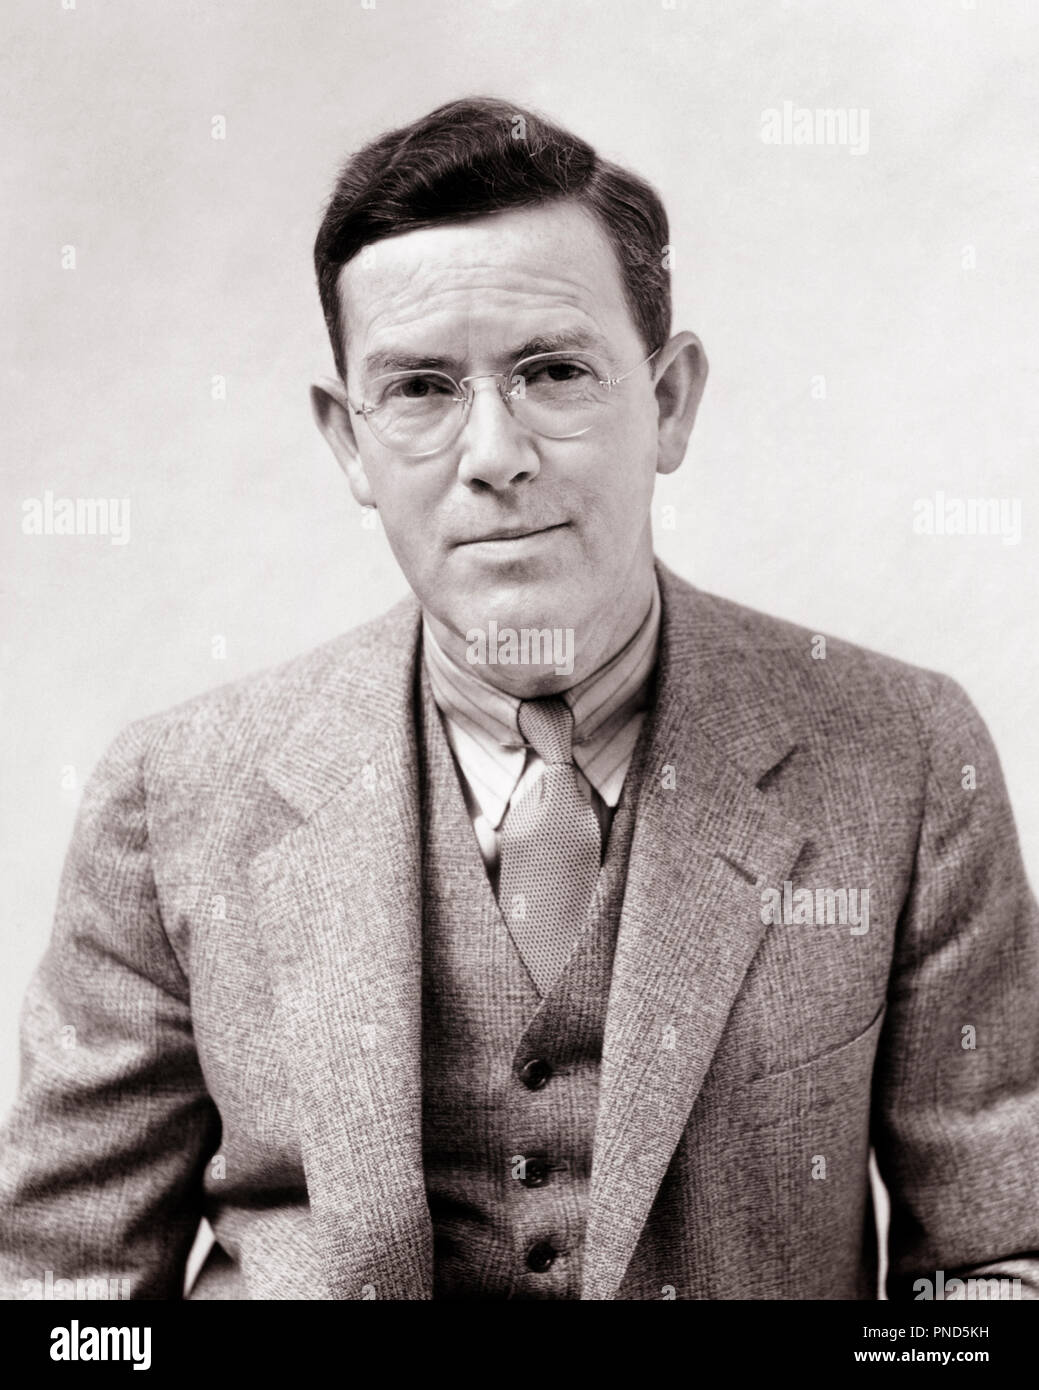 1930 PHOTOGRAPHE PORTRAIT MAN H. ARMSTRONG ROBERTS portant des lunettes gilet costume cravate LOOKING AT CAMERA - p5505 HAR001 HARS, CONTACT AVEC LES YEUX LE BONHEUR SOURIT STYLES costume trois pièces H ARMSTRONG ROBERTS ÉLÉGANT JOYEUSE FASHIONS NOIR ET BLANC DE L'ORIGINE ETHNIQUE CAUCASIENNE HAR001 old fashioned Banque D'Images